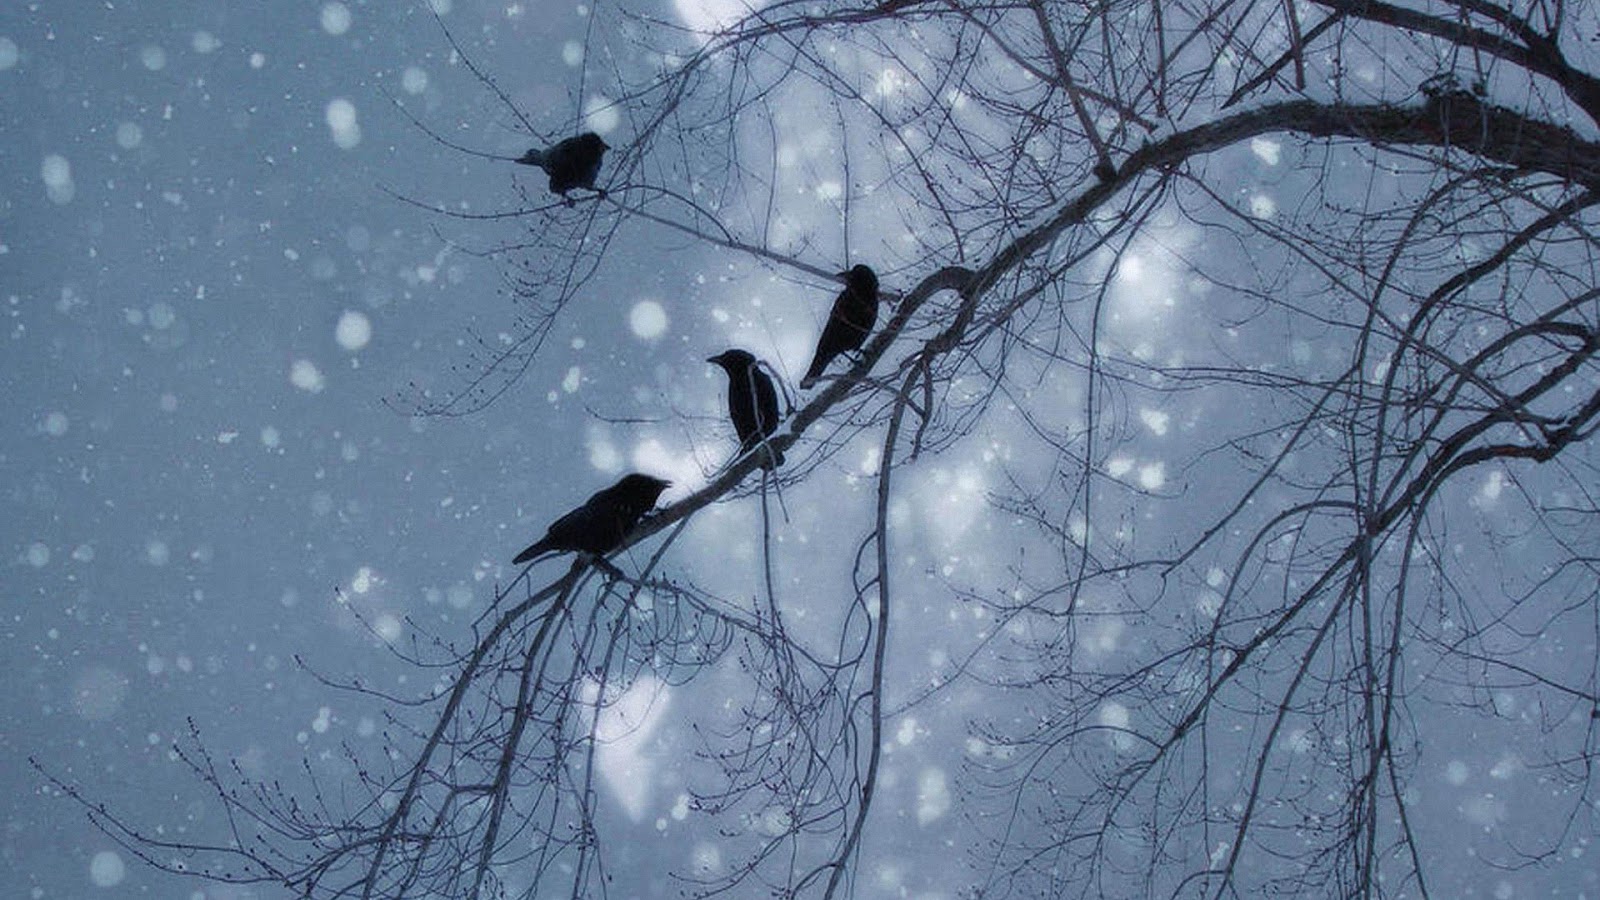 Птицы на дереве зимой. Ворона на ветке зимой. Птицы в небе зимой. Ветки в снегу.